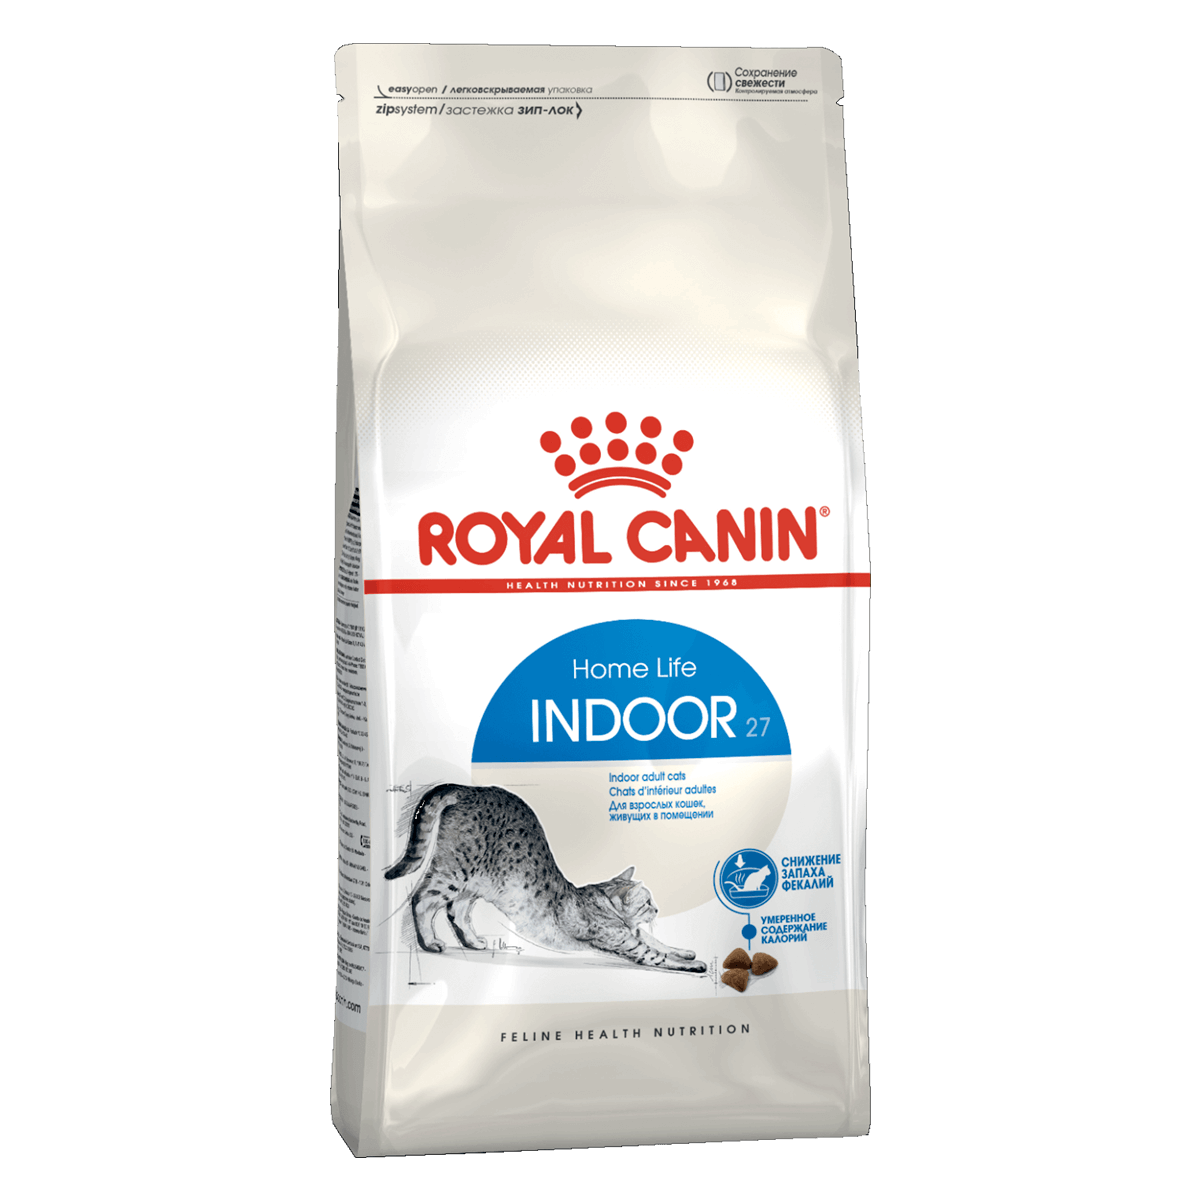 Royal Canin Indoor 27, 4 кг - корм Роял Канин для взрослых кошек